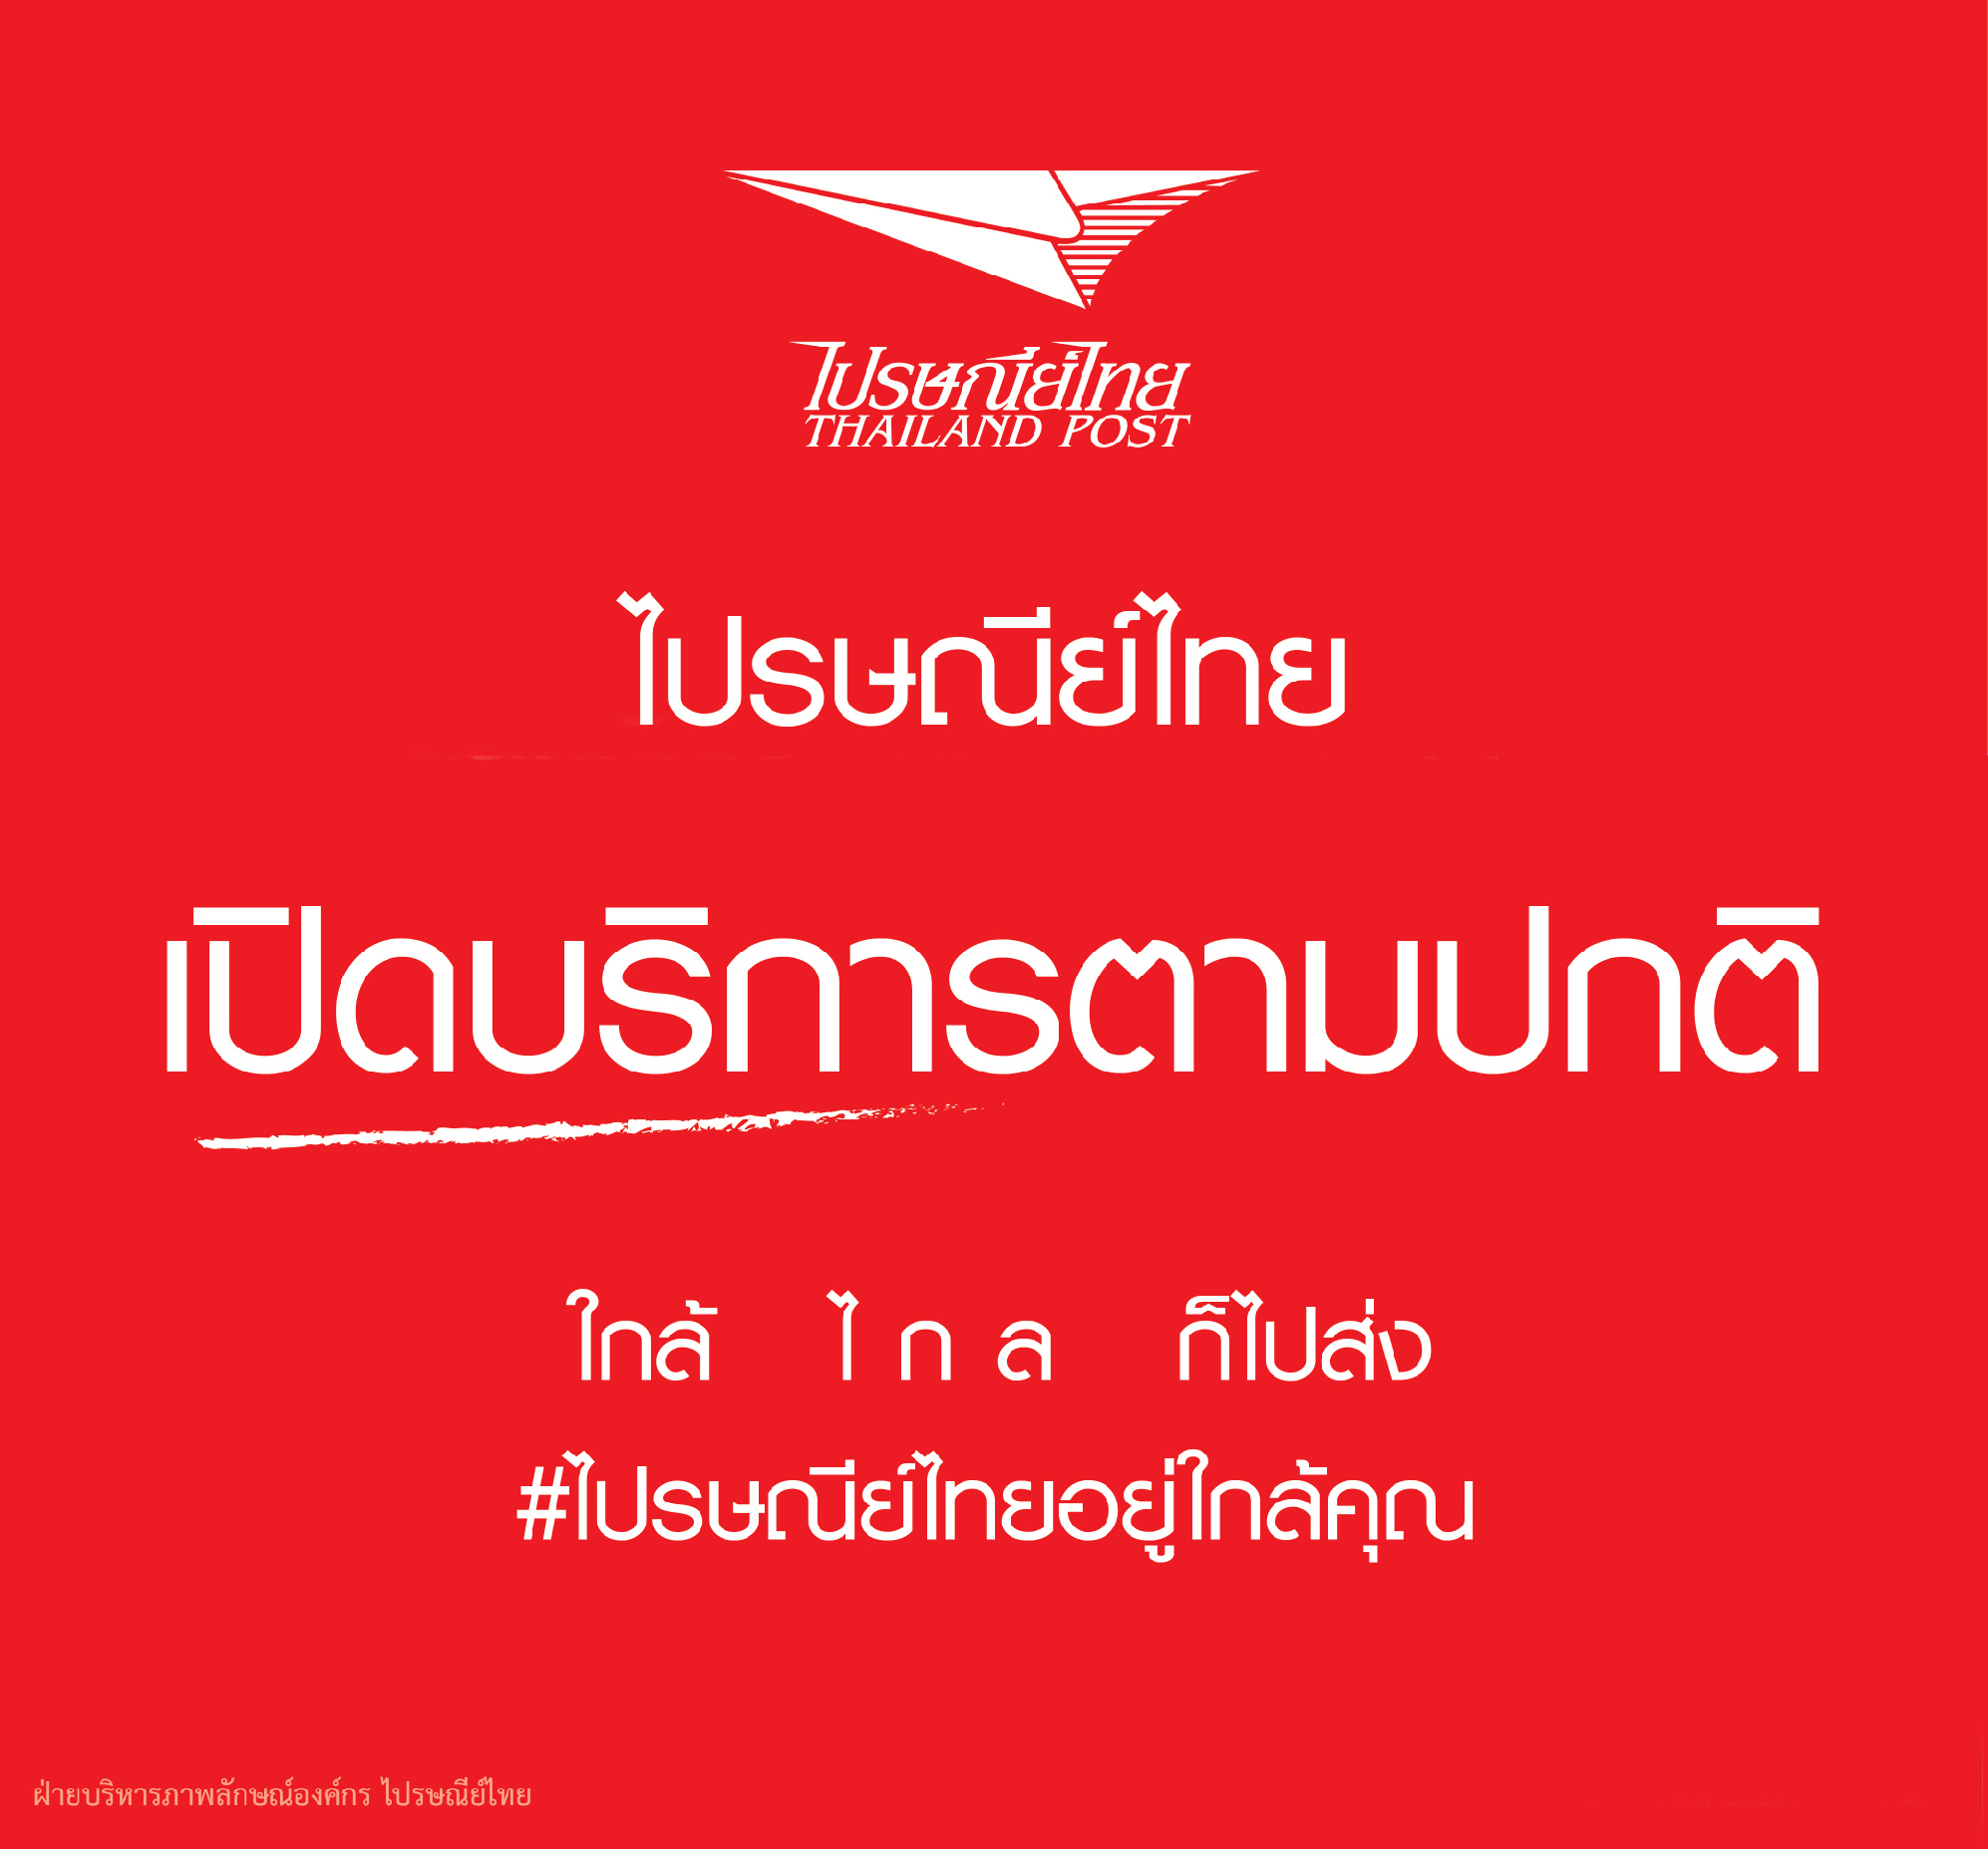 ไปรษณีย์ไทย เปิดให้บริการตามปกติในวันหยุดราชการเดือนพฤษภาคม